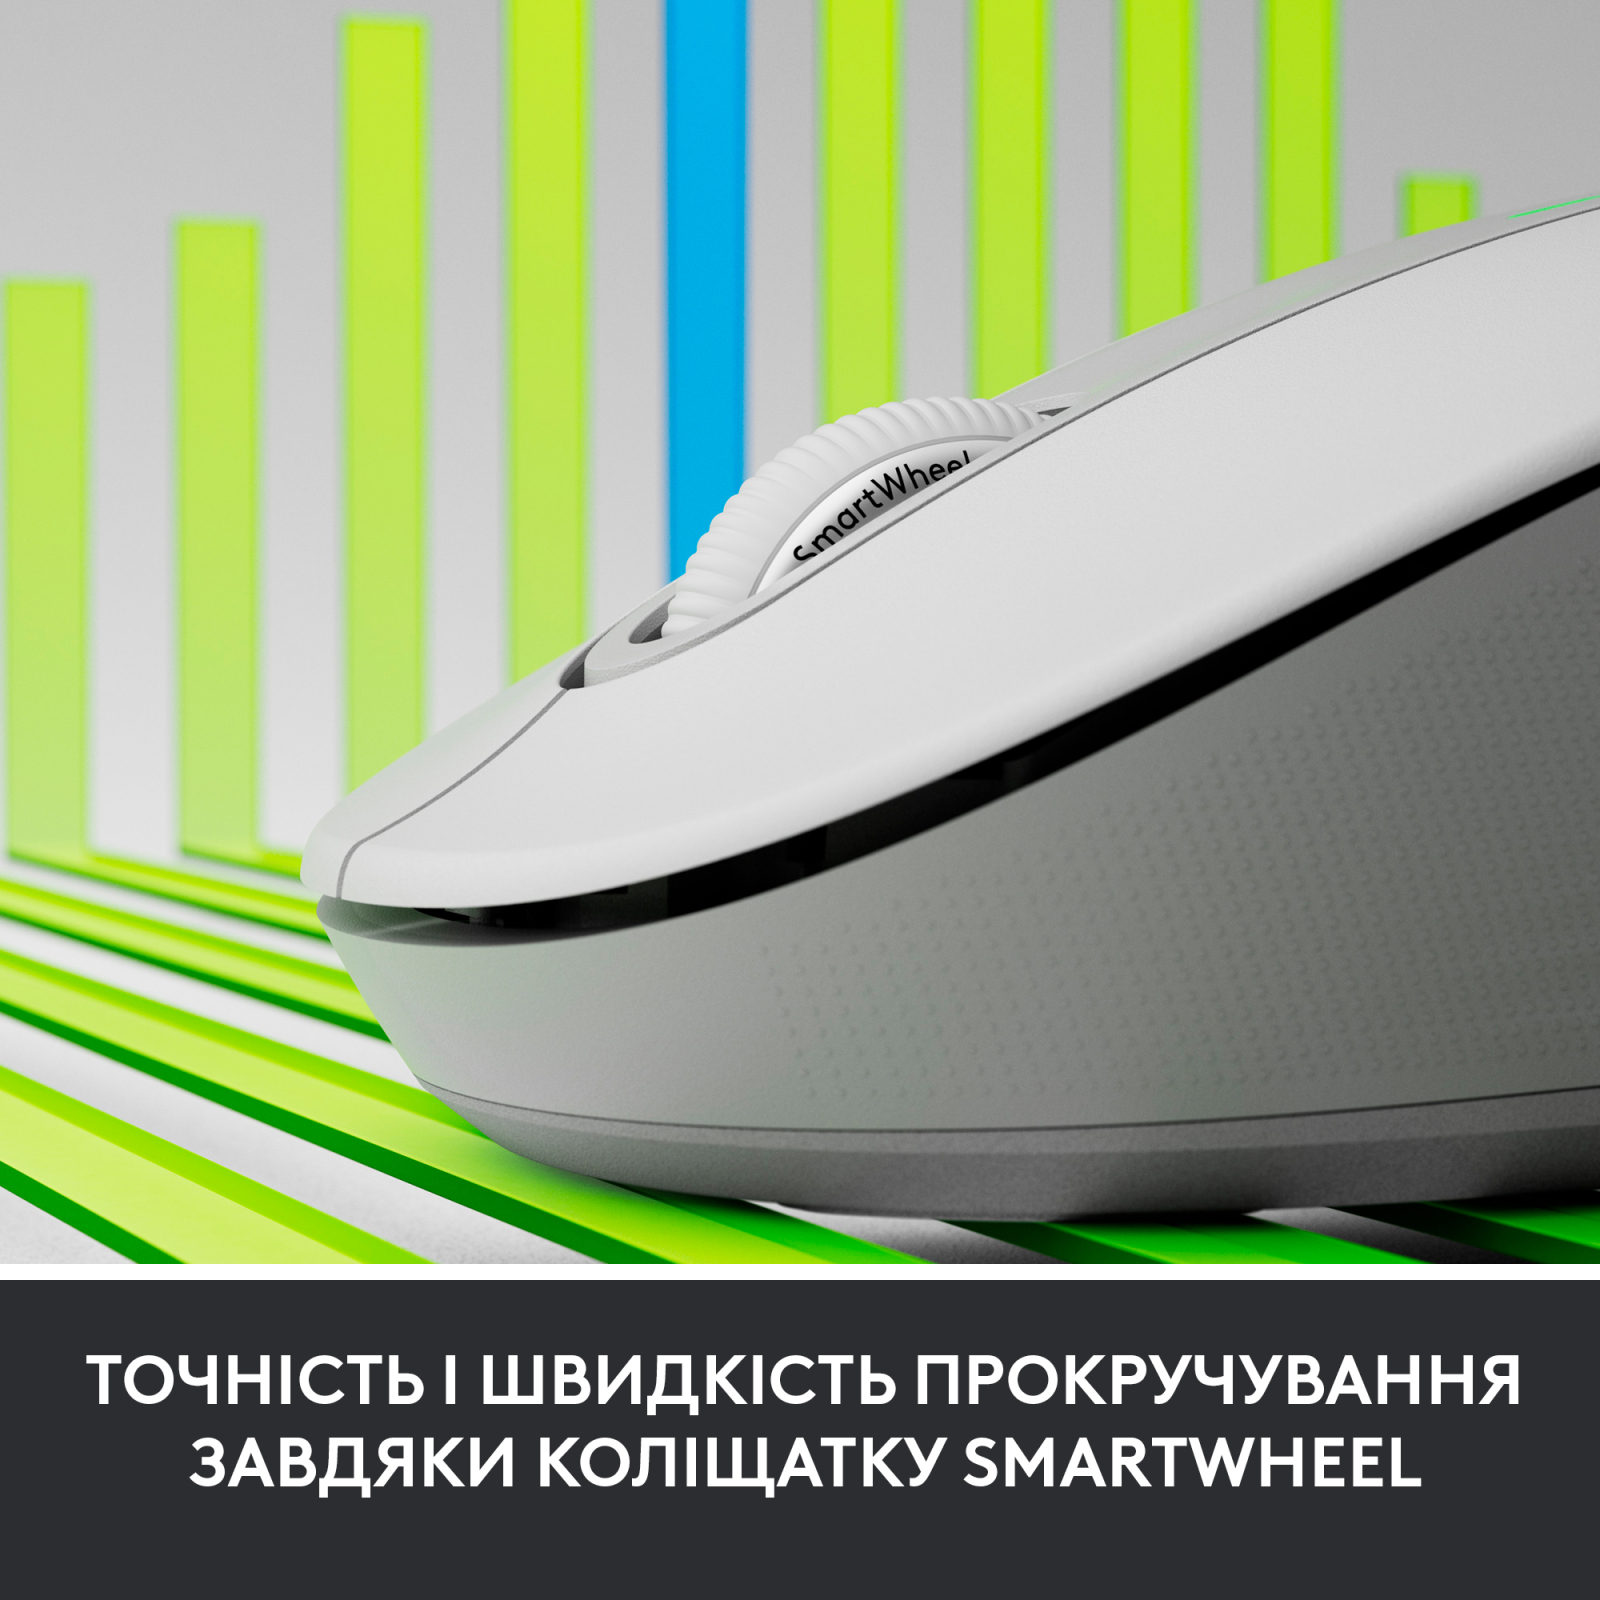 Мышка Logitech Signature M650 Wireless for Business Off-White (910-006275) изображение 5